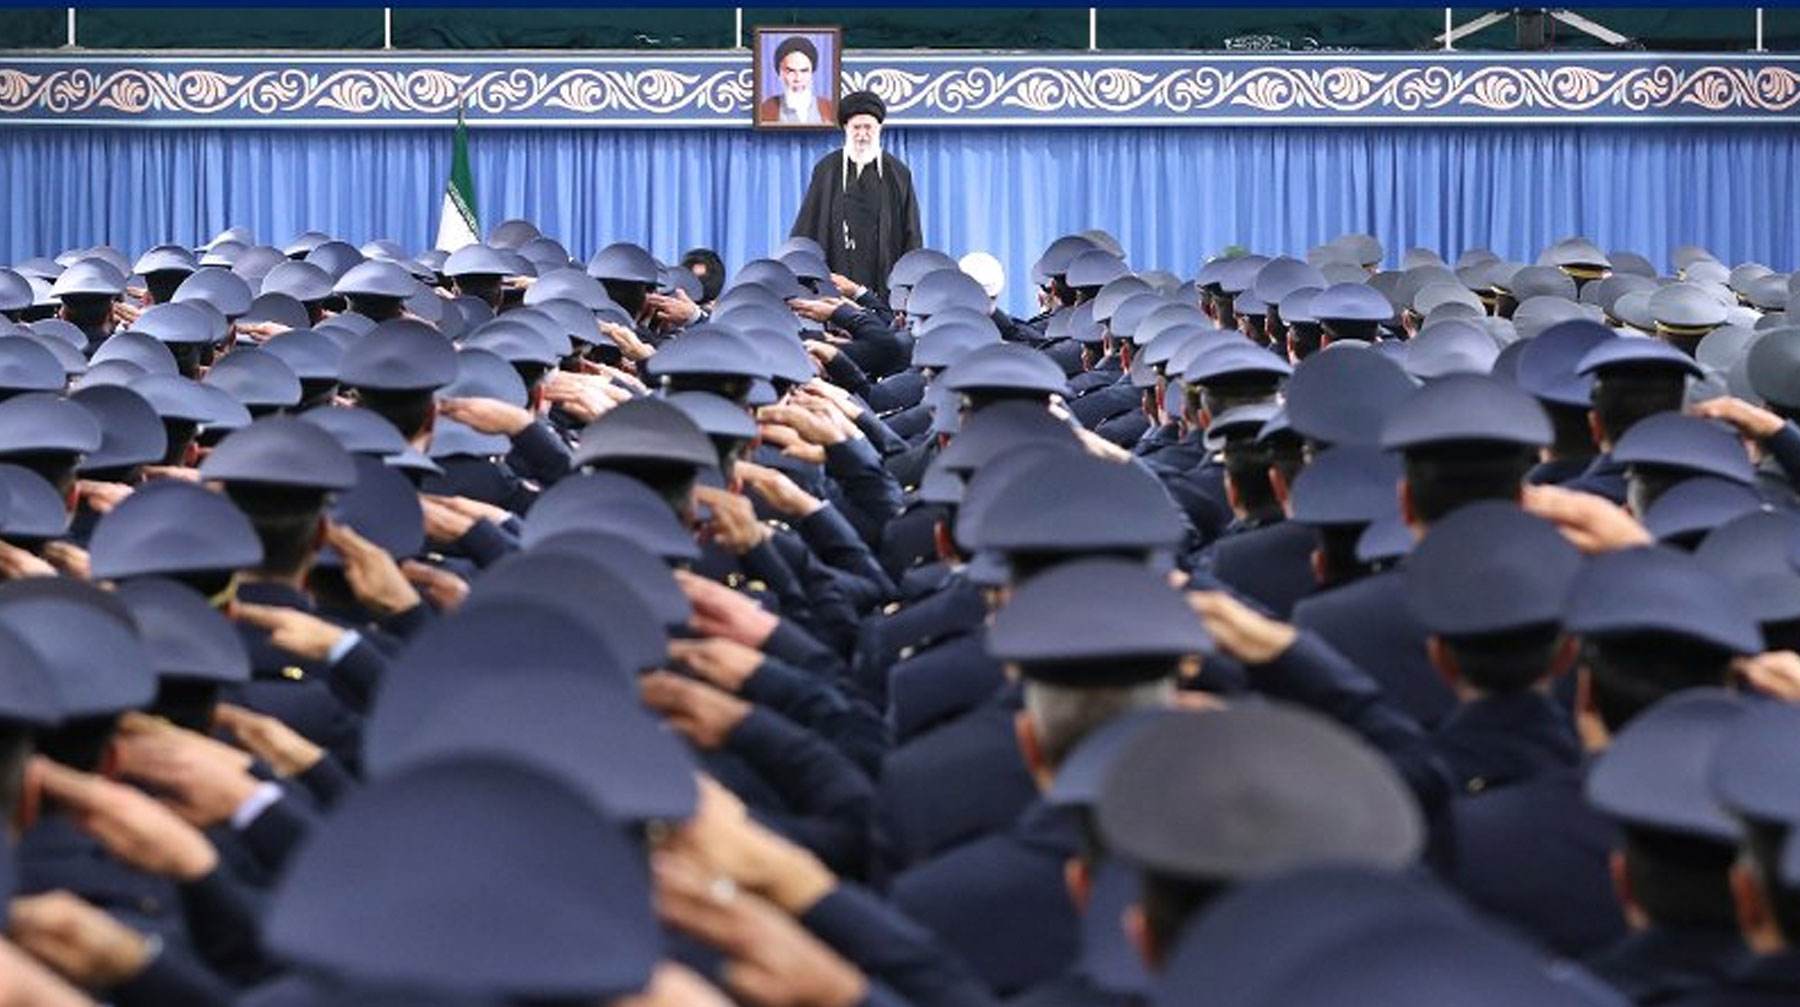 Исламская Республика Иран не имеет ничего против американского народа, отметил верховный лидер страны Верховный лидер Исламской Республики Иран аятолла Али Хаменеи